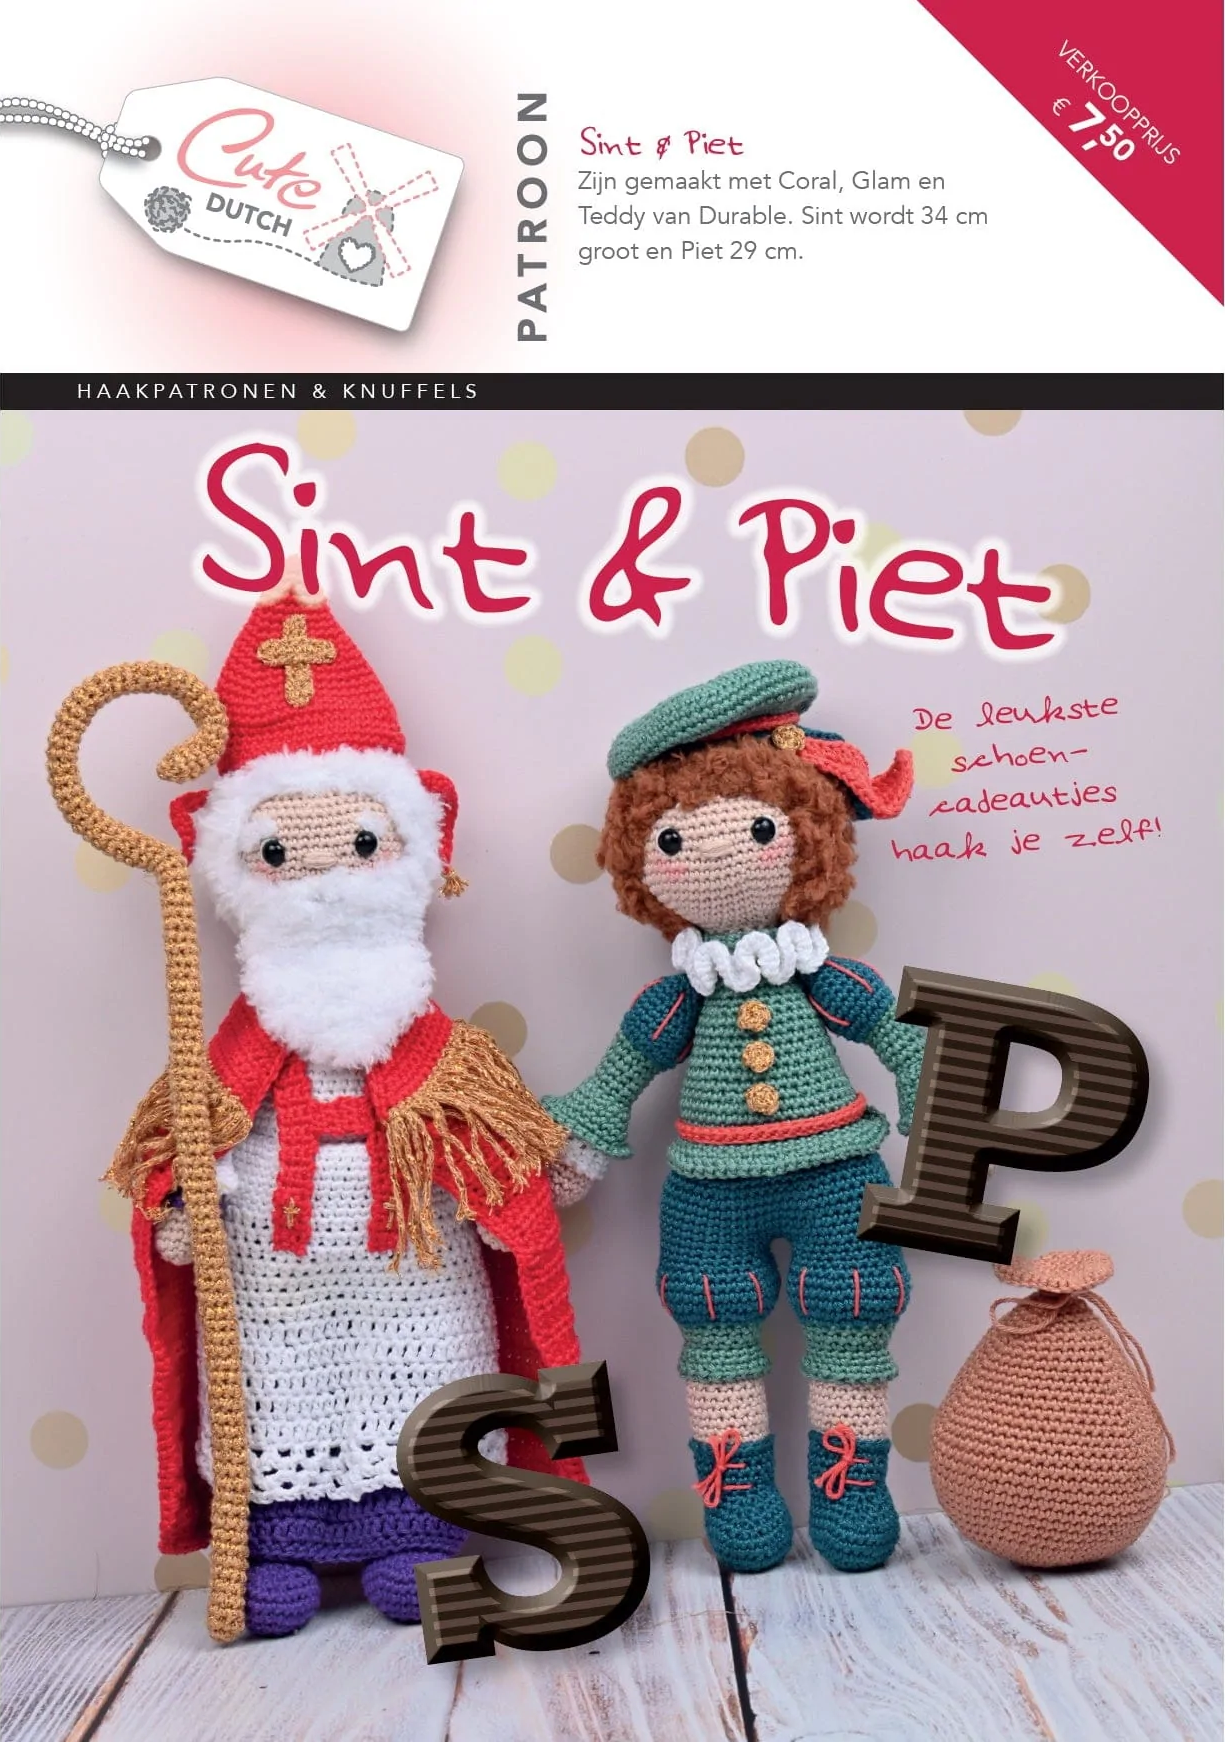 CuteDutch - Patroonboekje Sint & Piet 